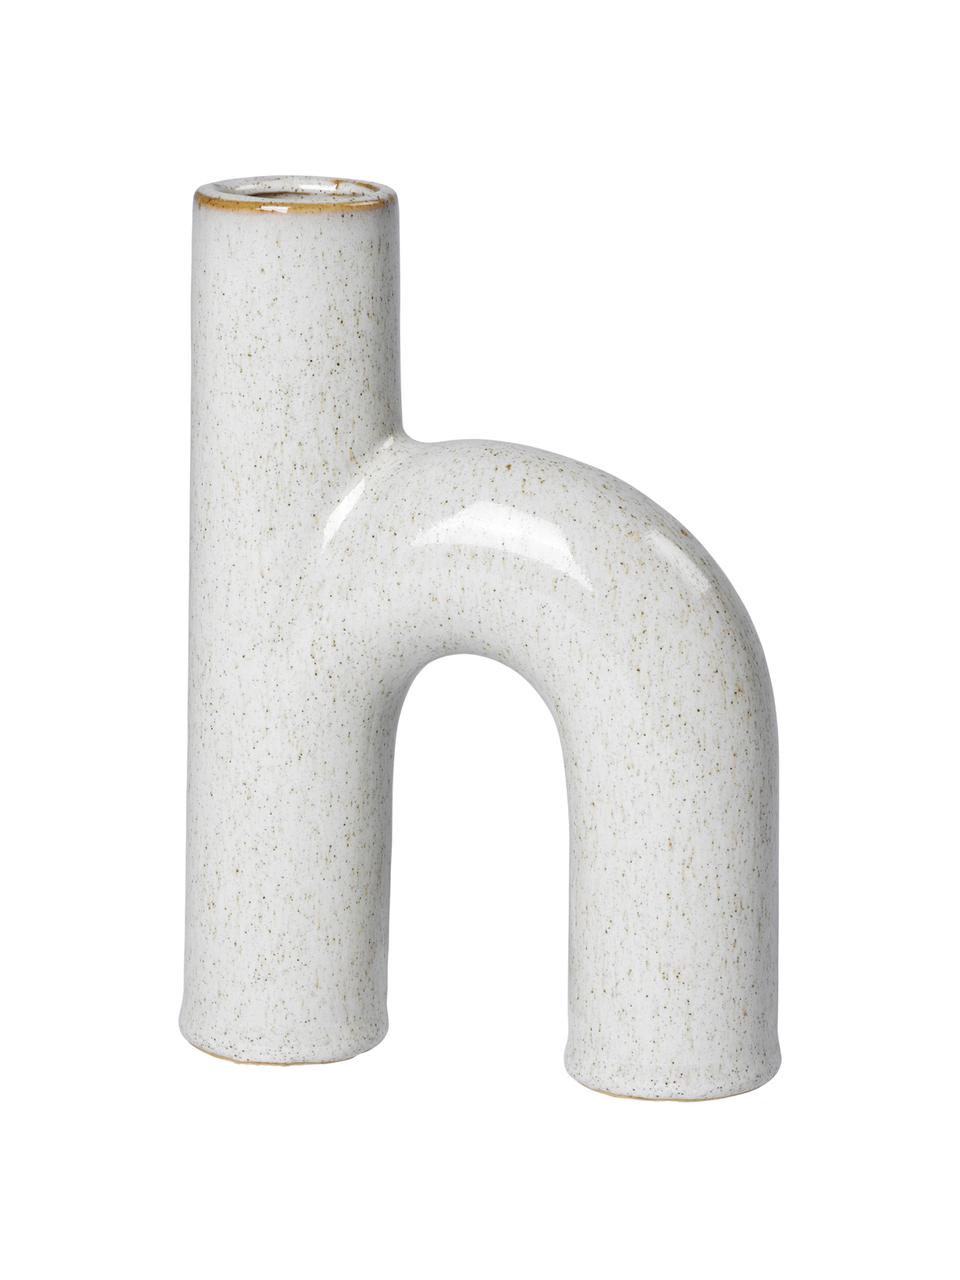 Design-Vase Hector aus Steingut, Steingut, Cremeweiß, B 13 cm x H 19 cm